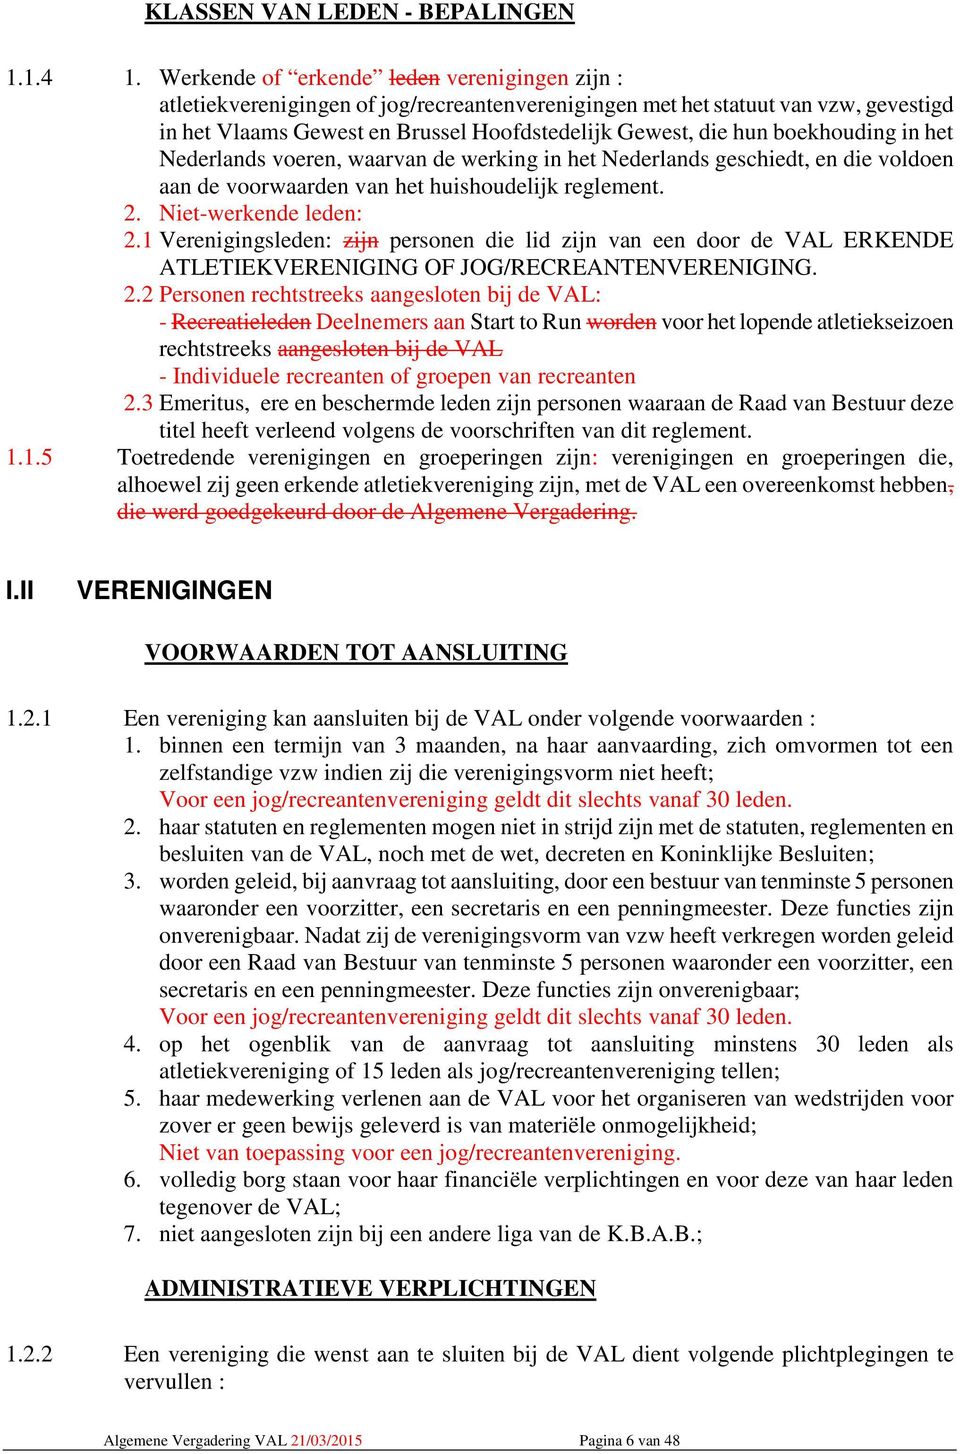 boekhouding in het Nederlands voeren, waarvan de werking in het Nederlands geschiedt, en die voldoen aan de voorwaarden van het huishoudelijk reglement. 2. Niet-werkende leden: 2.